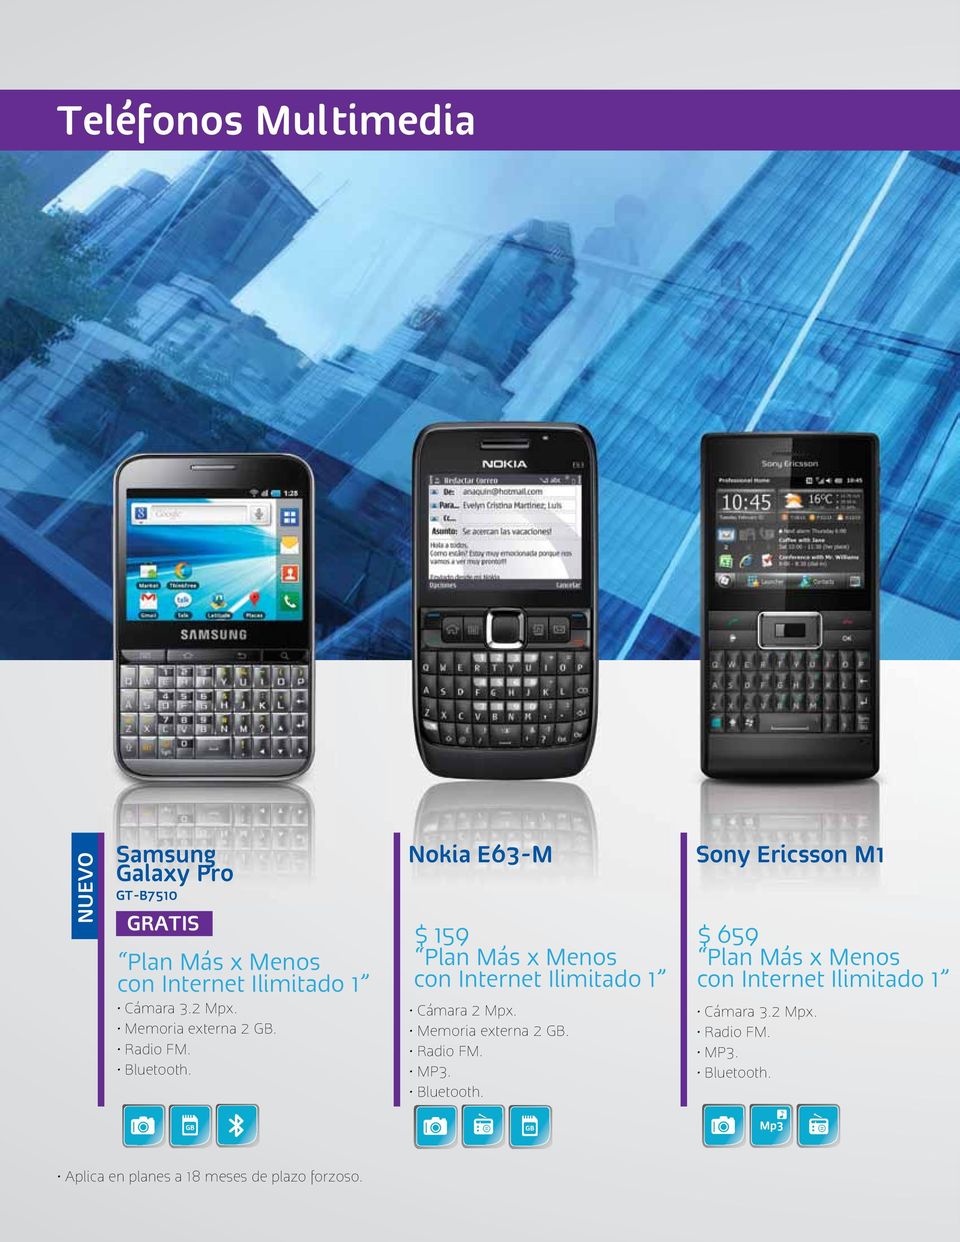 Nokia E63-M $ 159 Plan Más x Menos con Internet Ilimitado 1 Cámara 2 Mpx. Memoria externa 2 GB.